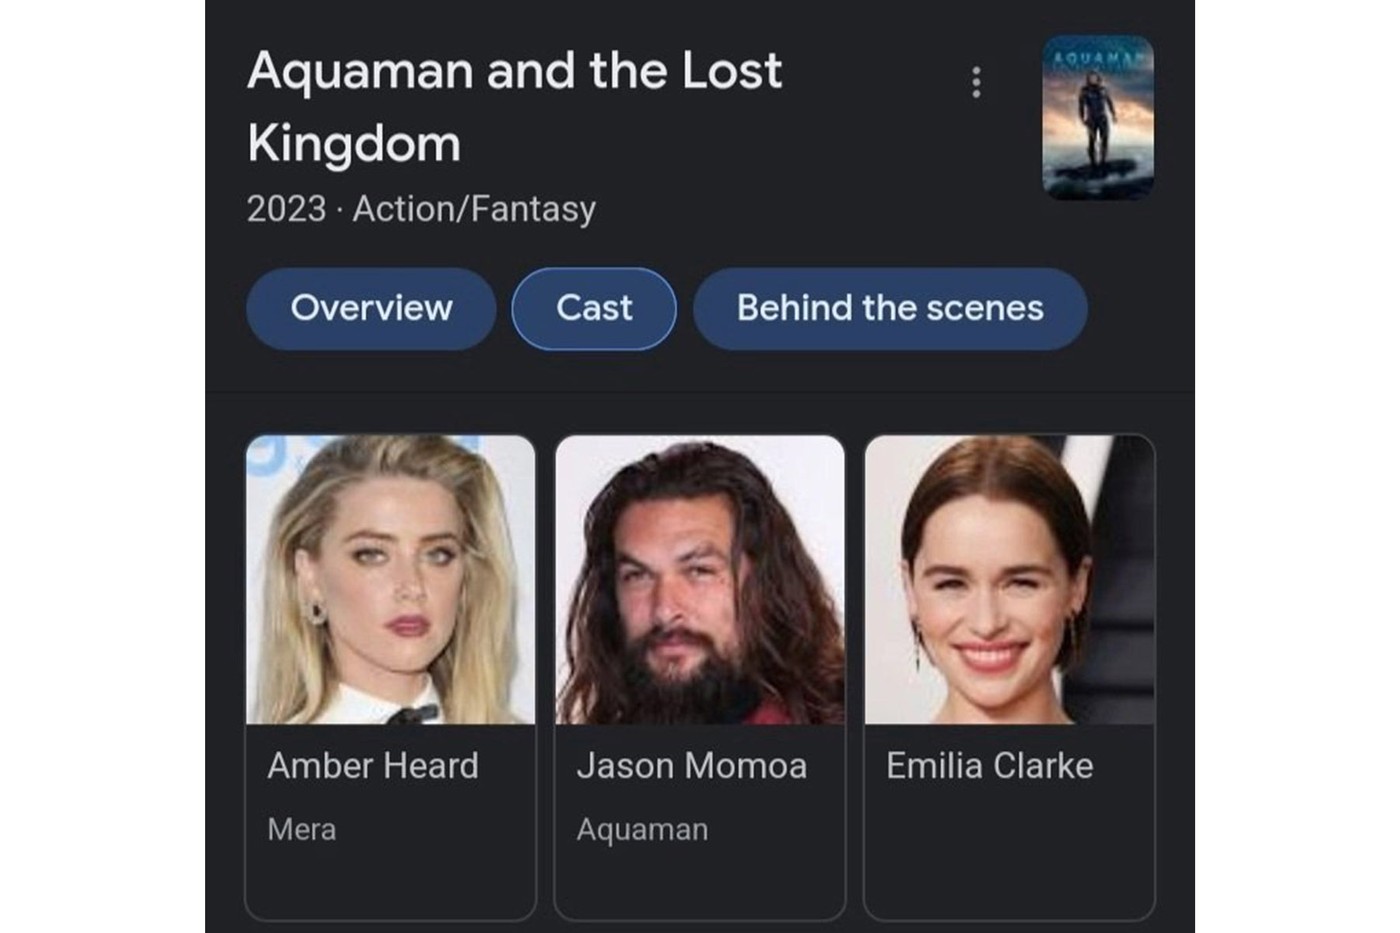 Aquaman 2 Mera Amber Heard Emilia Clarke Jason Momoa Rumor